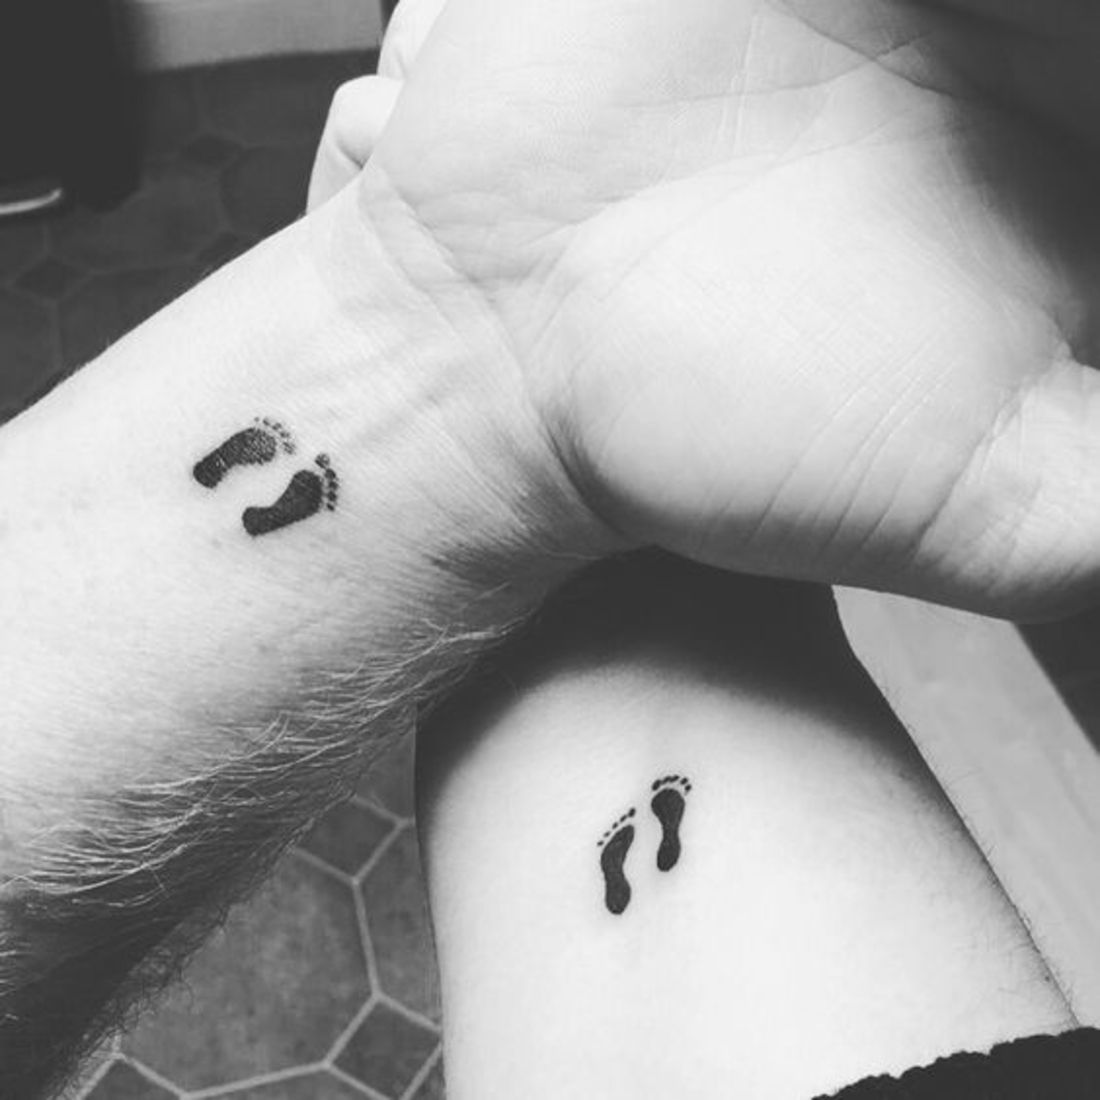 24 Tatuajes para madres que quieren plasmar amor a sus hijos